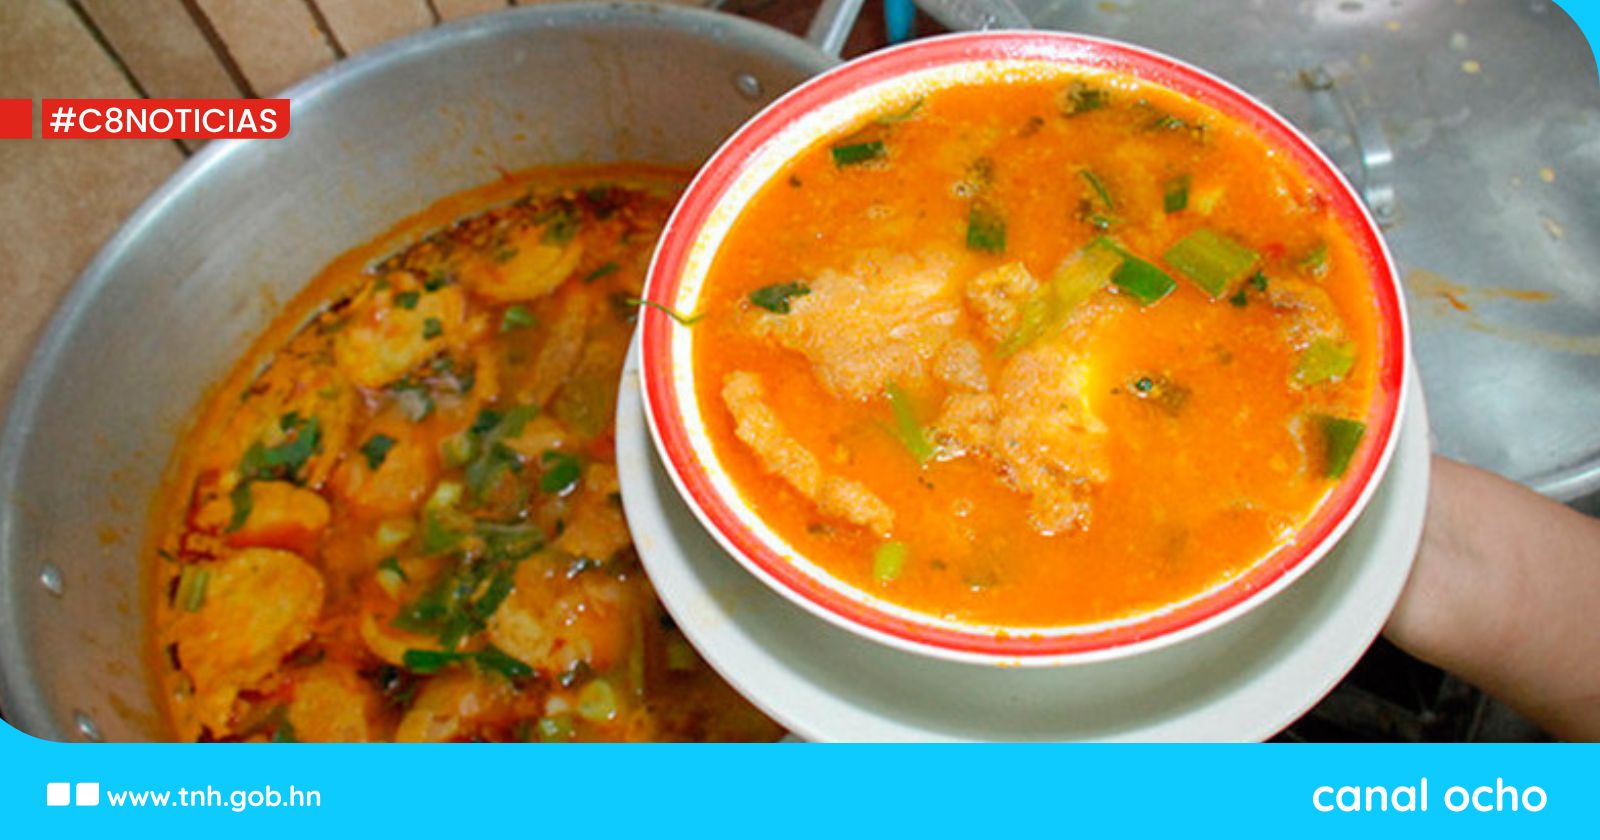 ¿Ya la hiciste? Conozca la receta de la sopa de tortas de pescado seco, una tradición de Semana Santa